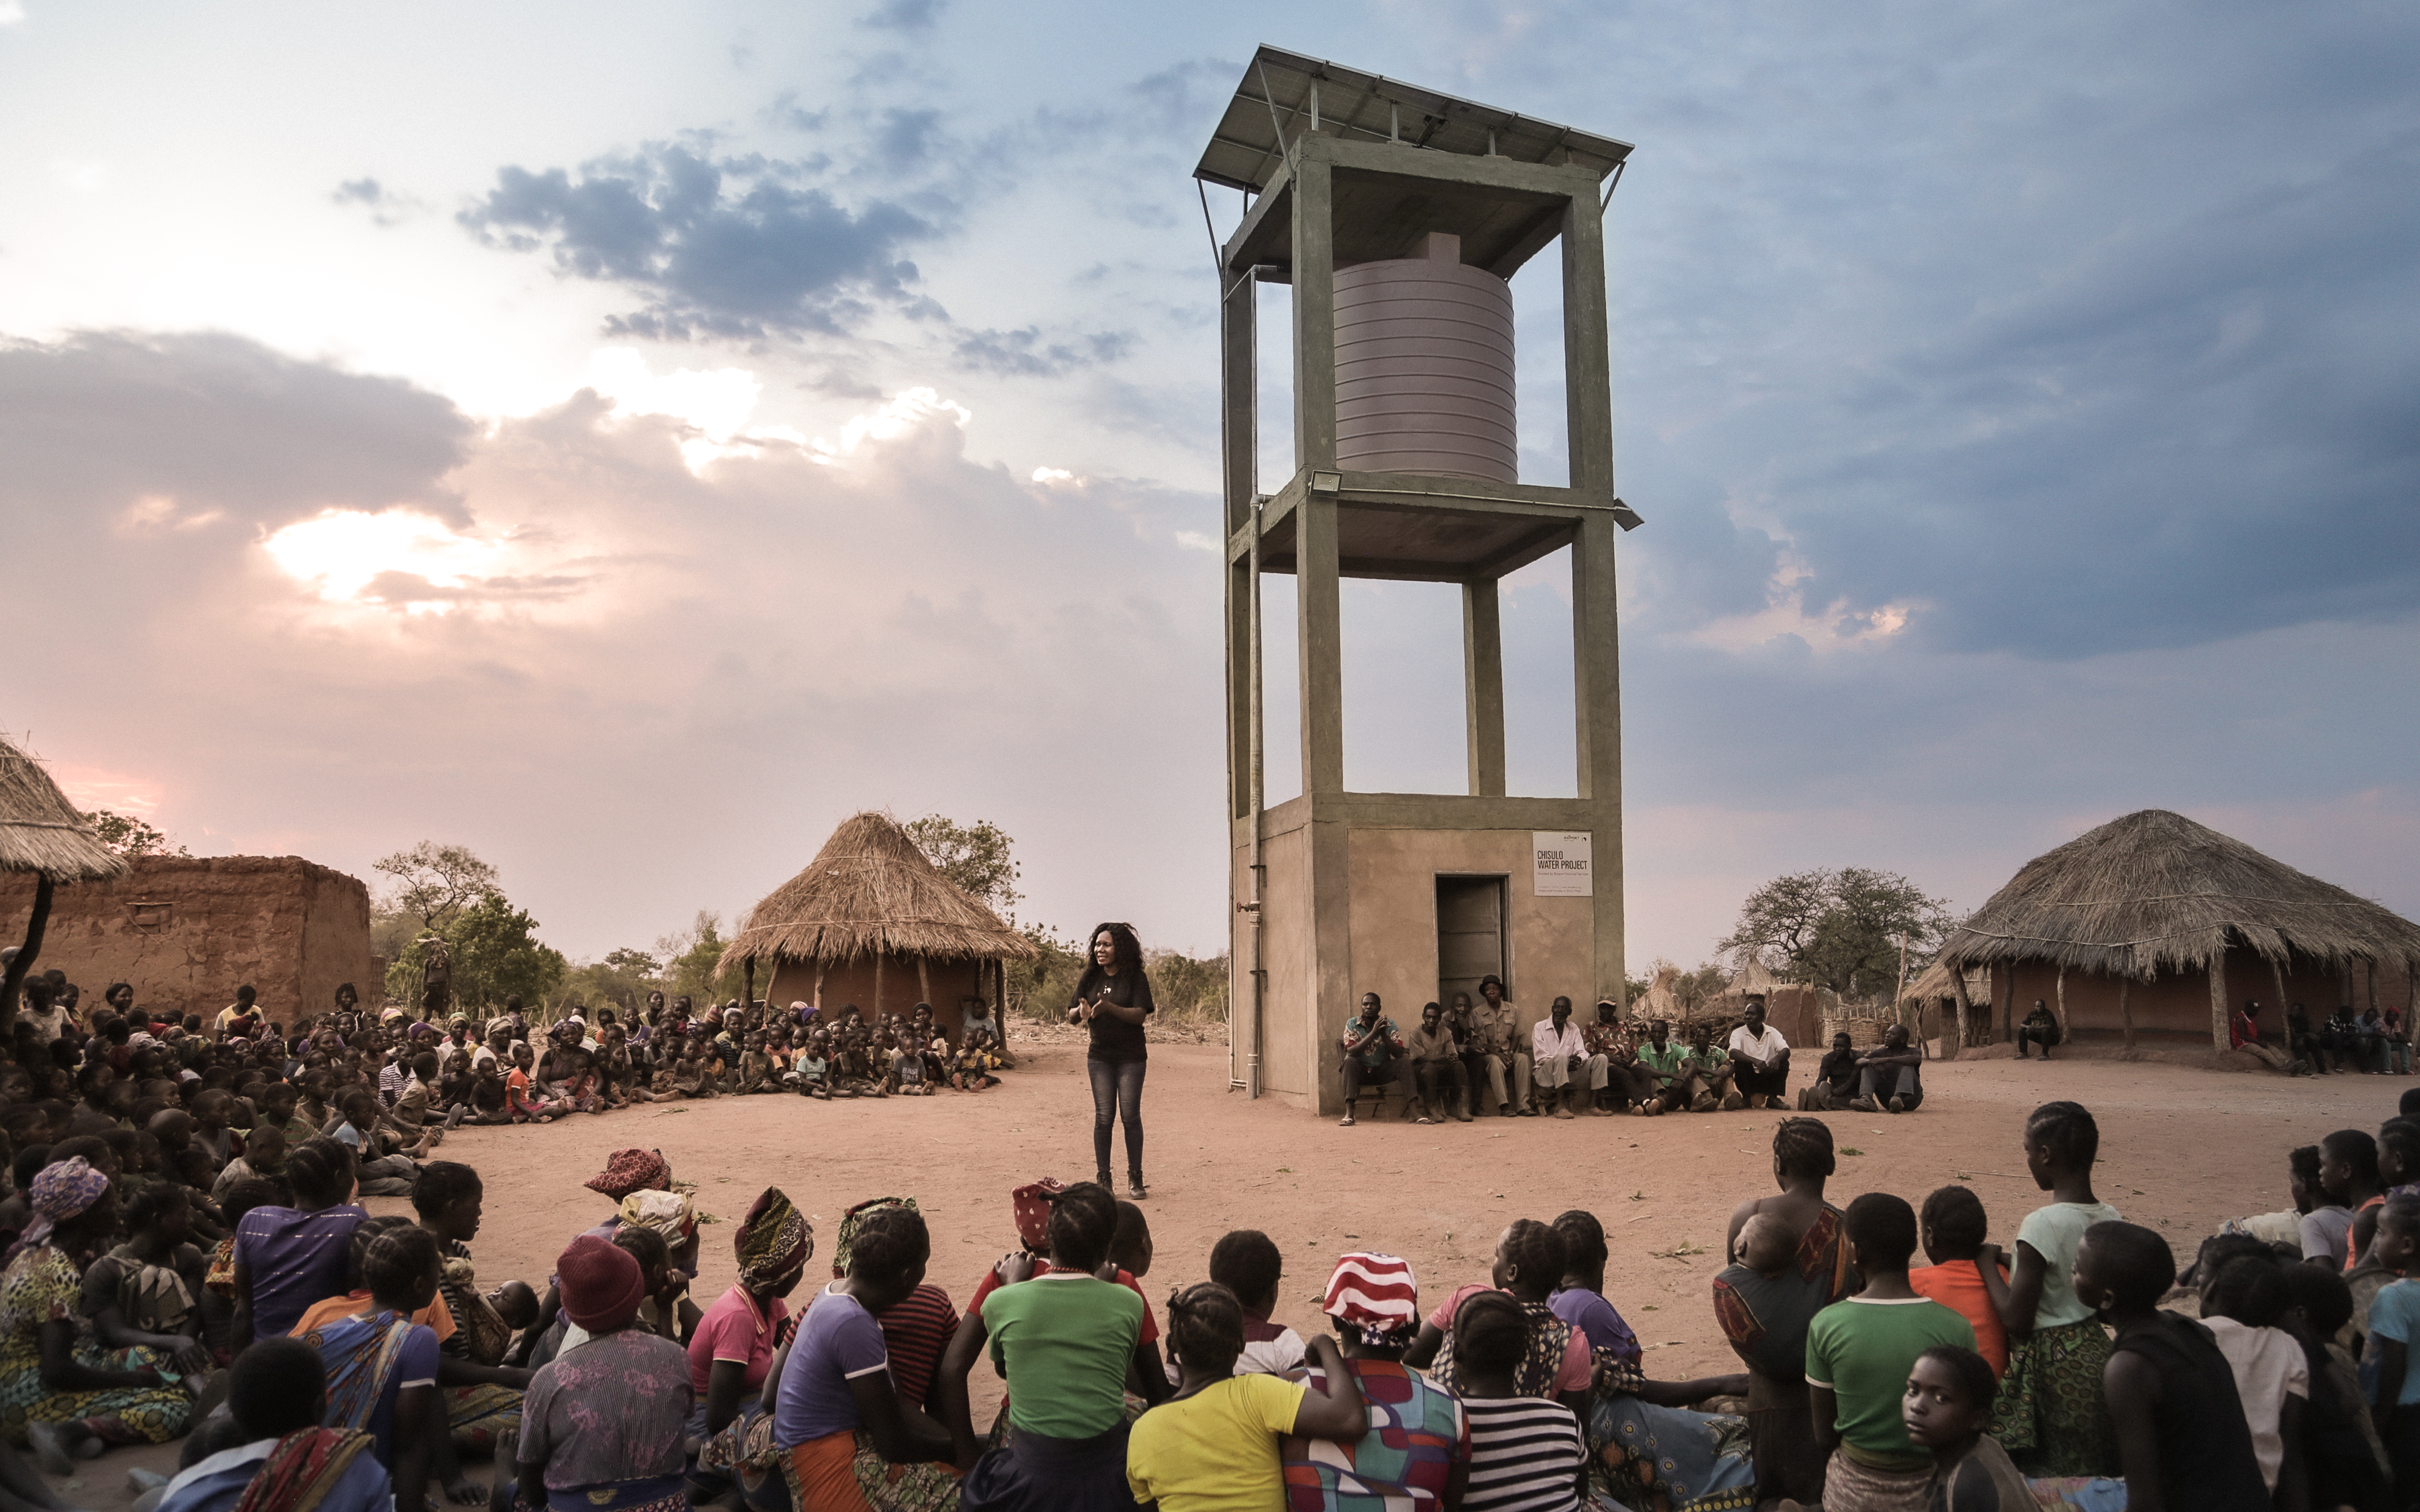 Les femmes du village de Chisulo en Zambie avaient l’habitude de se réveiller à 3 heures du matin et de marcher plus de 8 kilomètres pour atteindre la source d’eau. Aujourd’hui, elles disposent d’un système de pompage d’eau solaire qui fournit de l’eau à leur communauté. (cliquez pour zoomer)